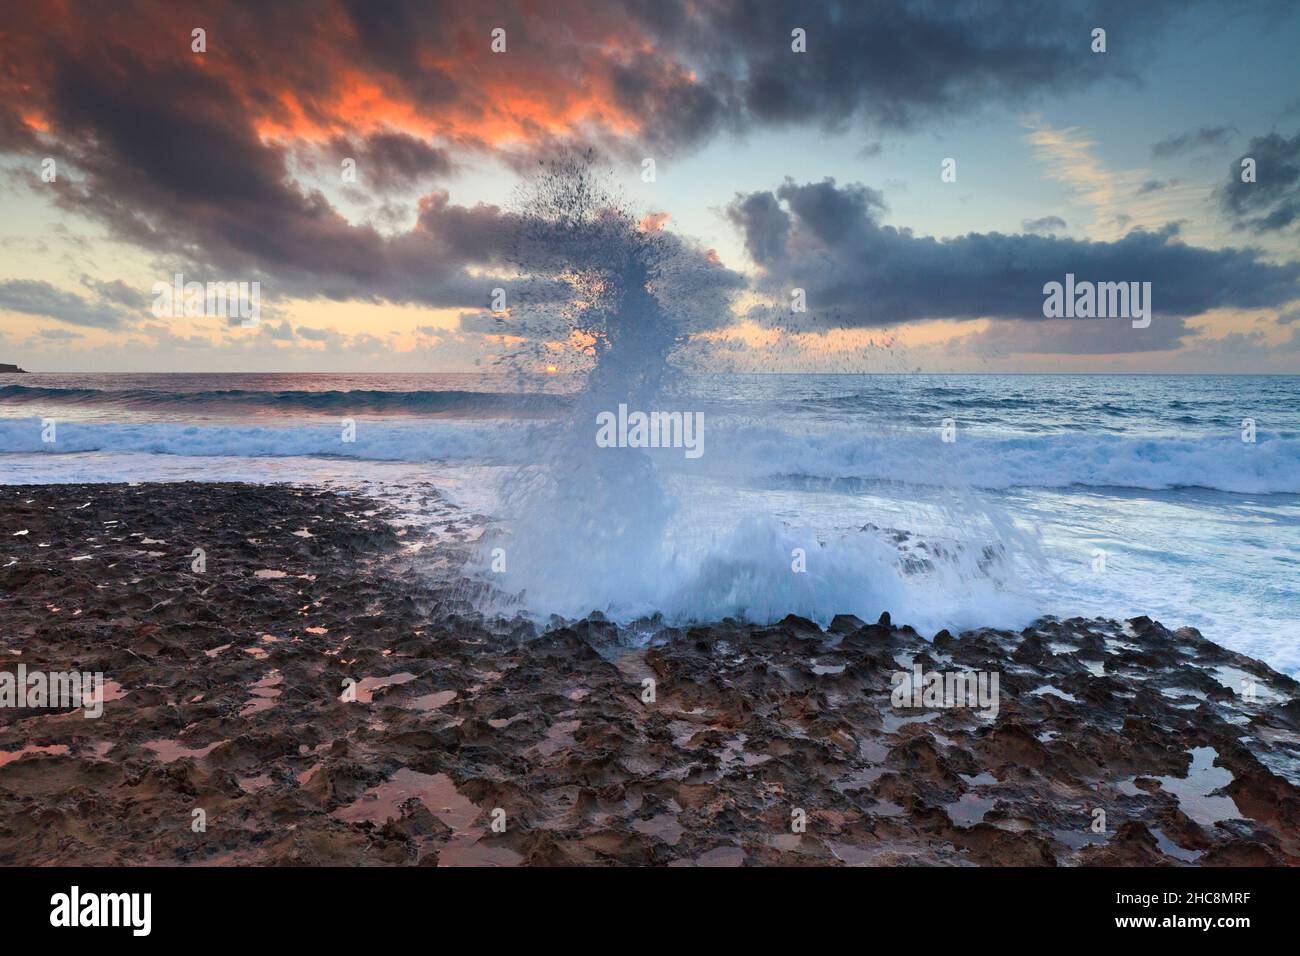 Sonnenuntergang und Wellen, die im Winter auf die felsige Küste stürmen, Halbinsel Akamas, Insel Zypern, östliches Mittelmeer Stockfoto